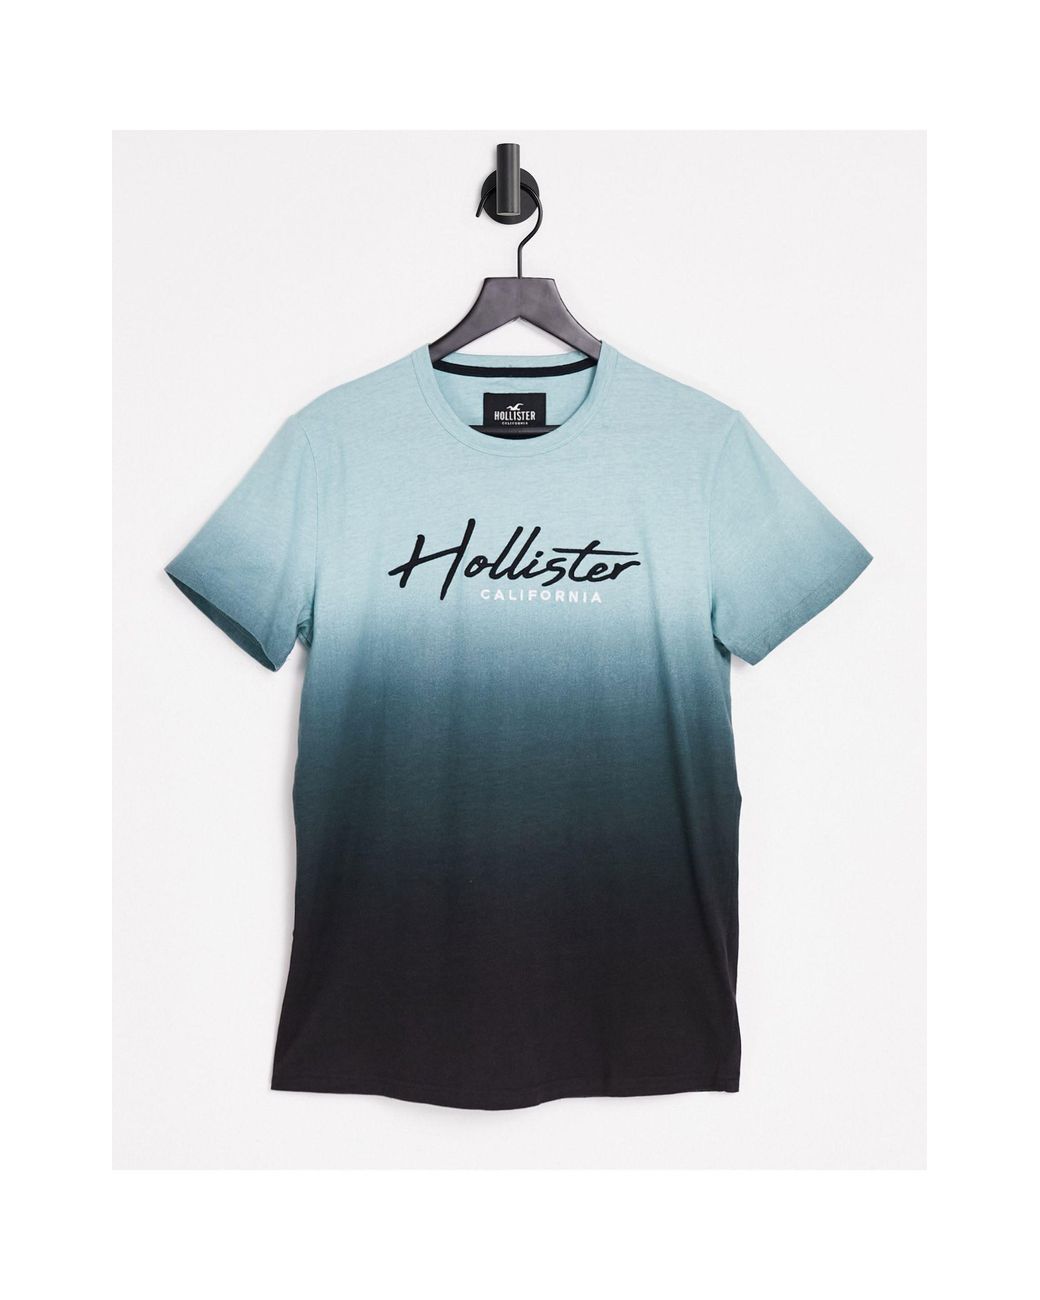 T-shirt graphique Hollister pour homme - col en V - Maroc